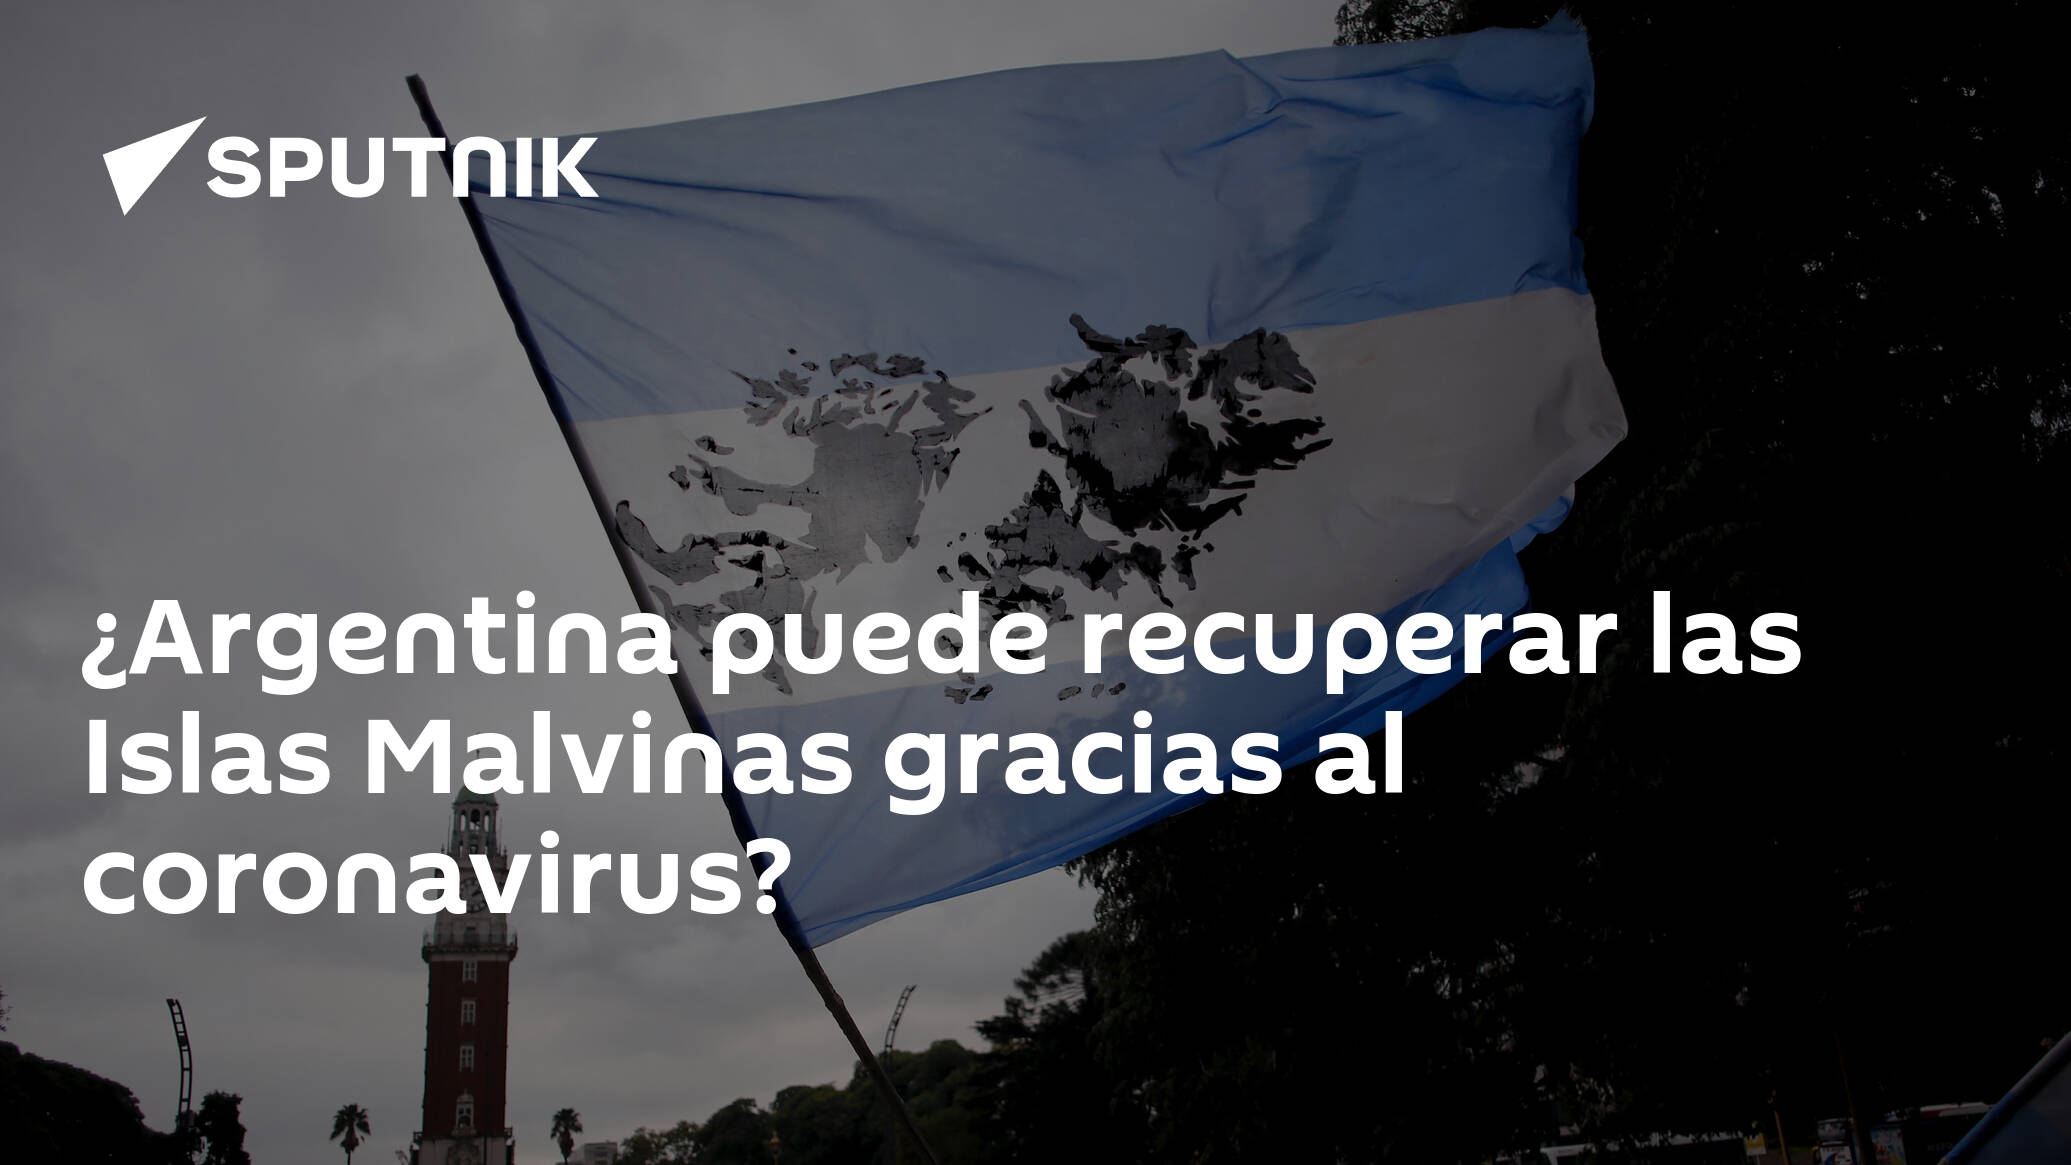 Comparación flojo Duque Argentina puede recuperar las Islas Malvinas gracias al coronavirus? -  08.04.2020, Sputnik Mundo